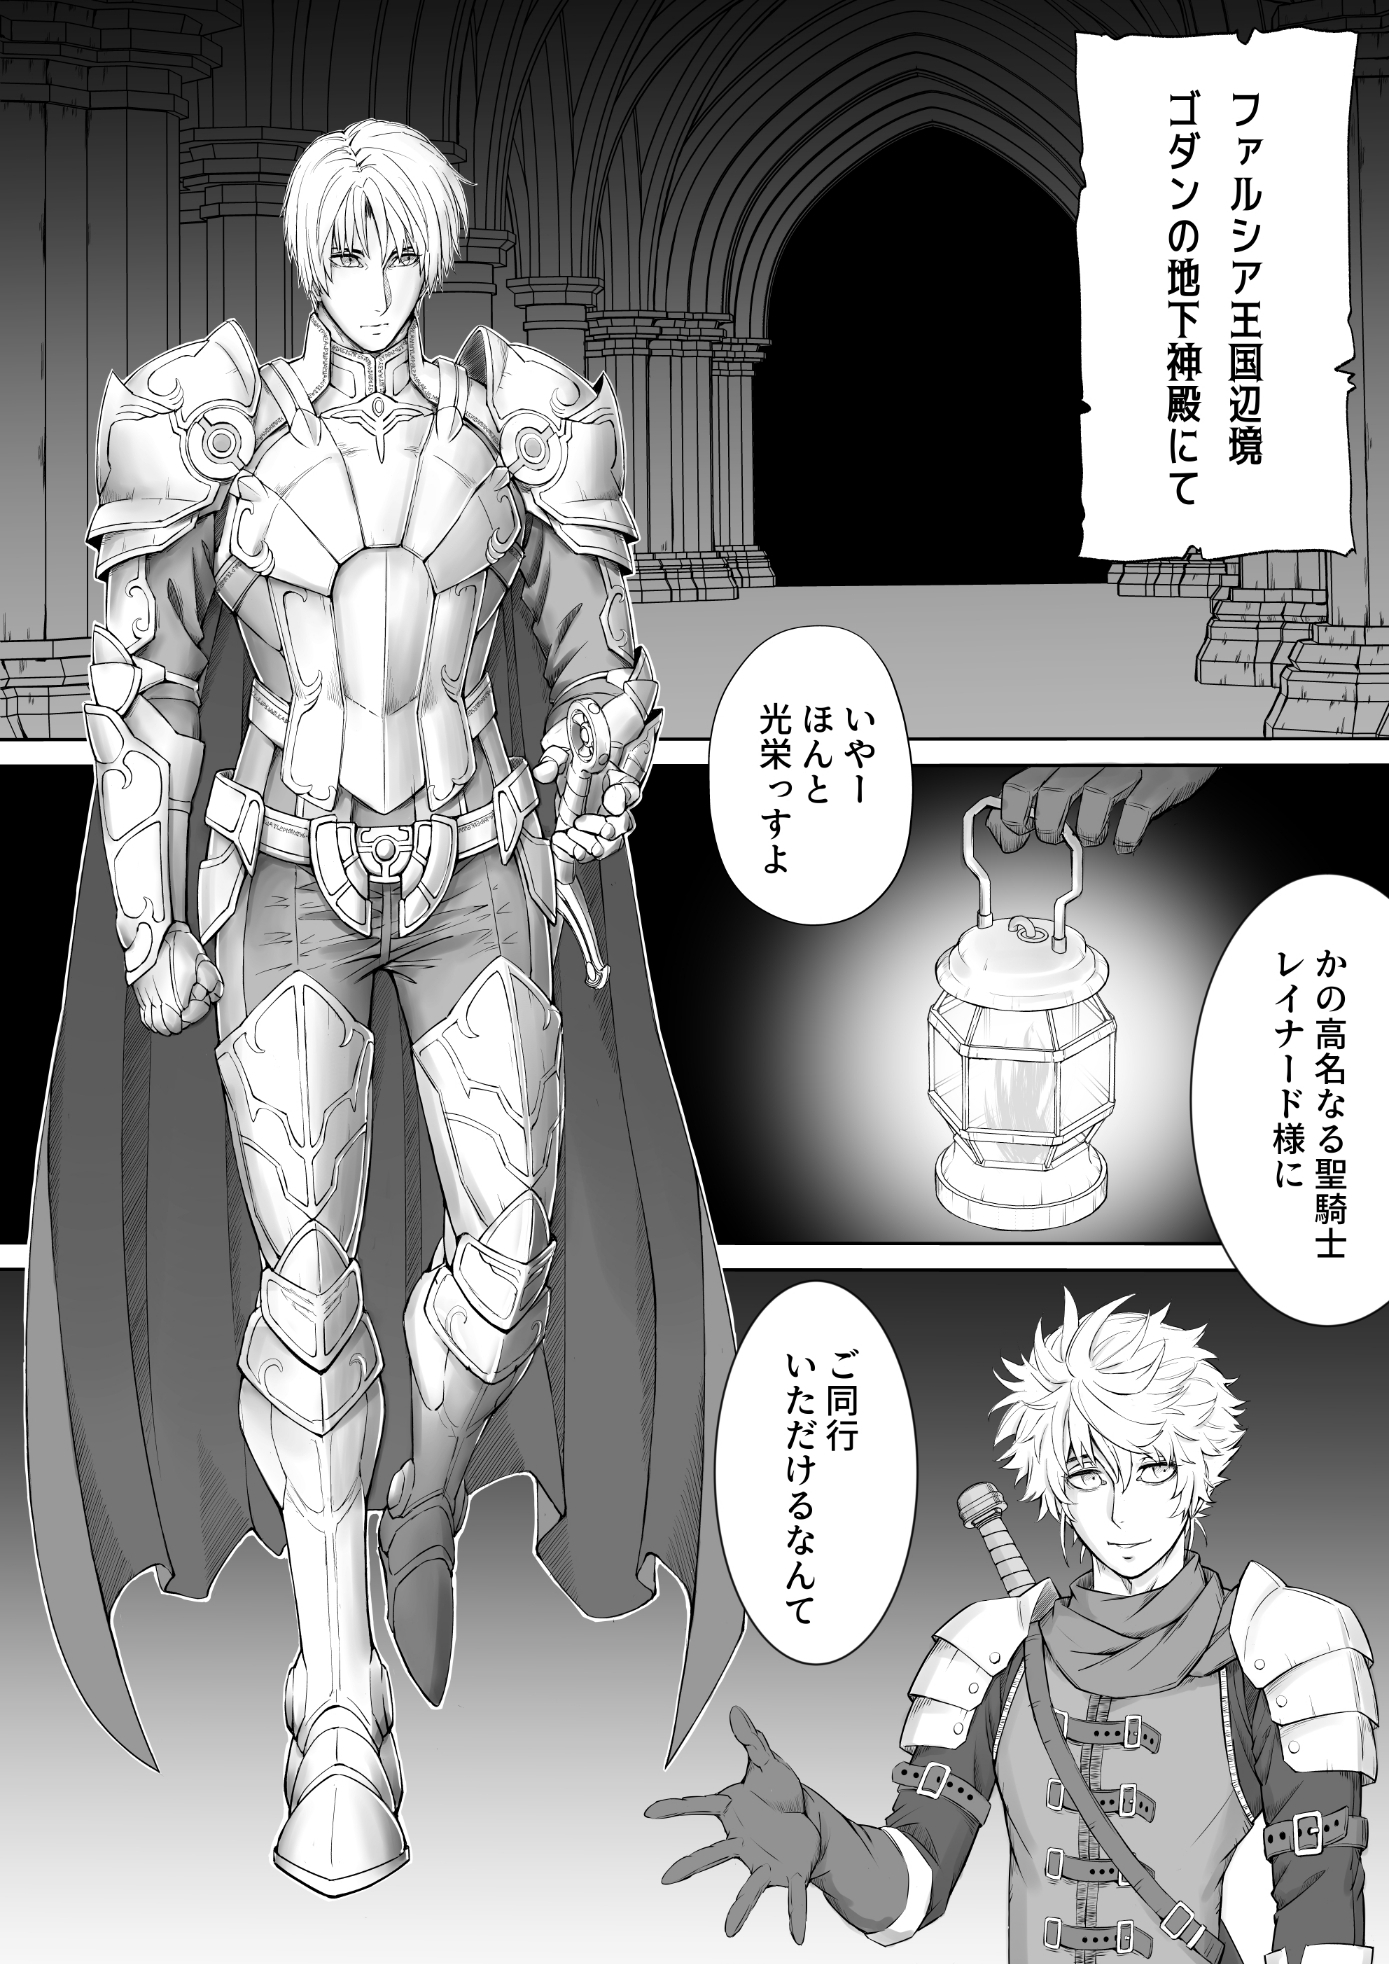 Knight of Labyrinth / ナイト オブ ラビリンス